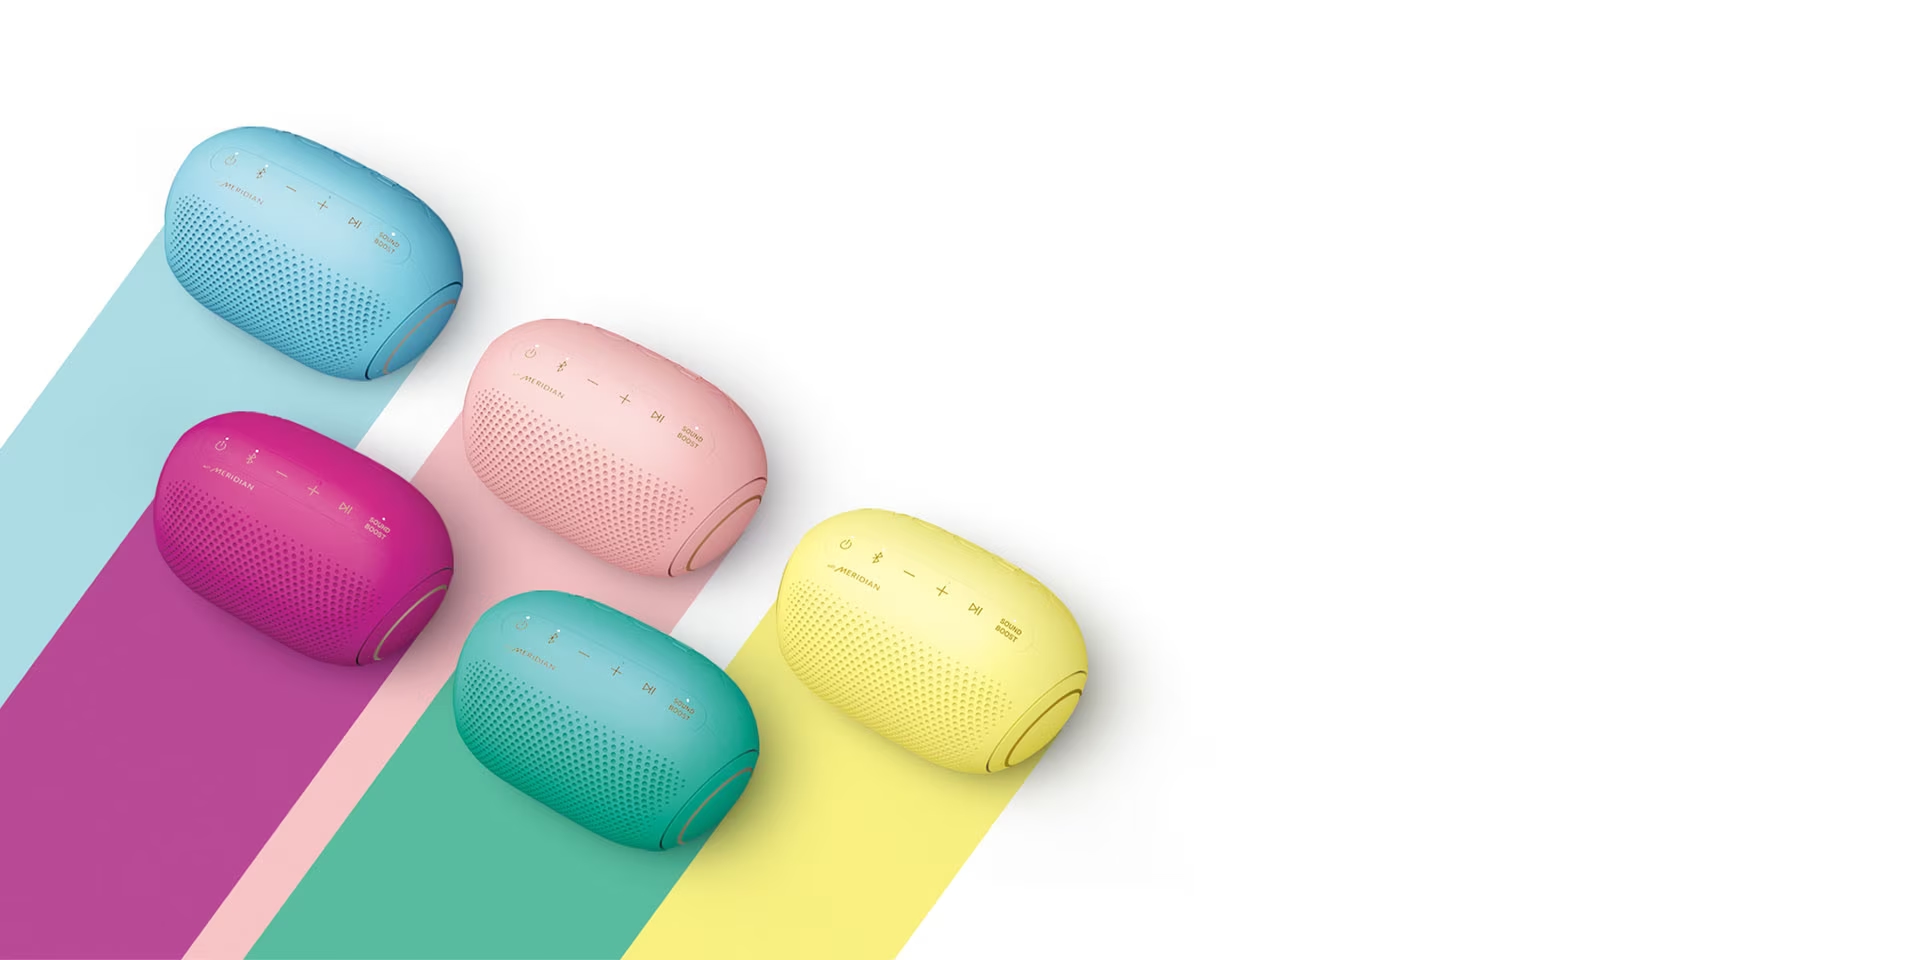 Las bocinas Jellybean están disponibles en 5 colores